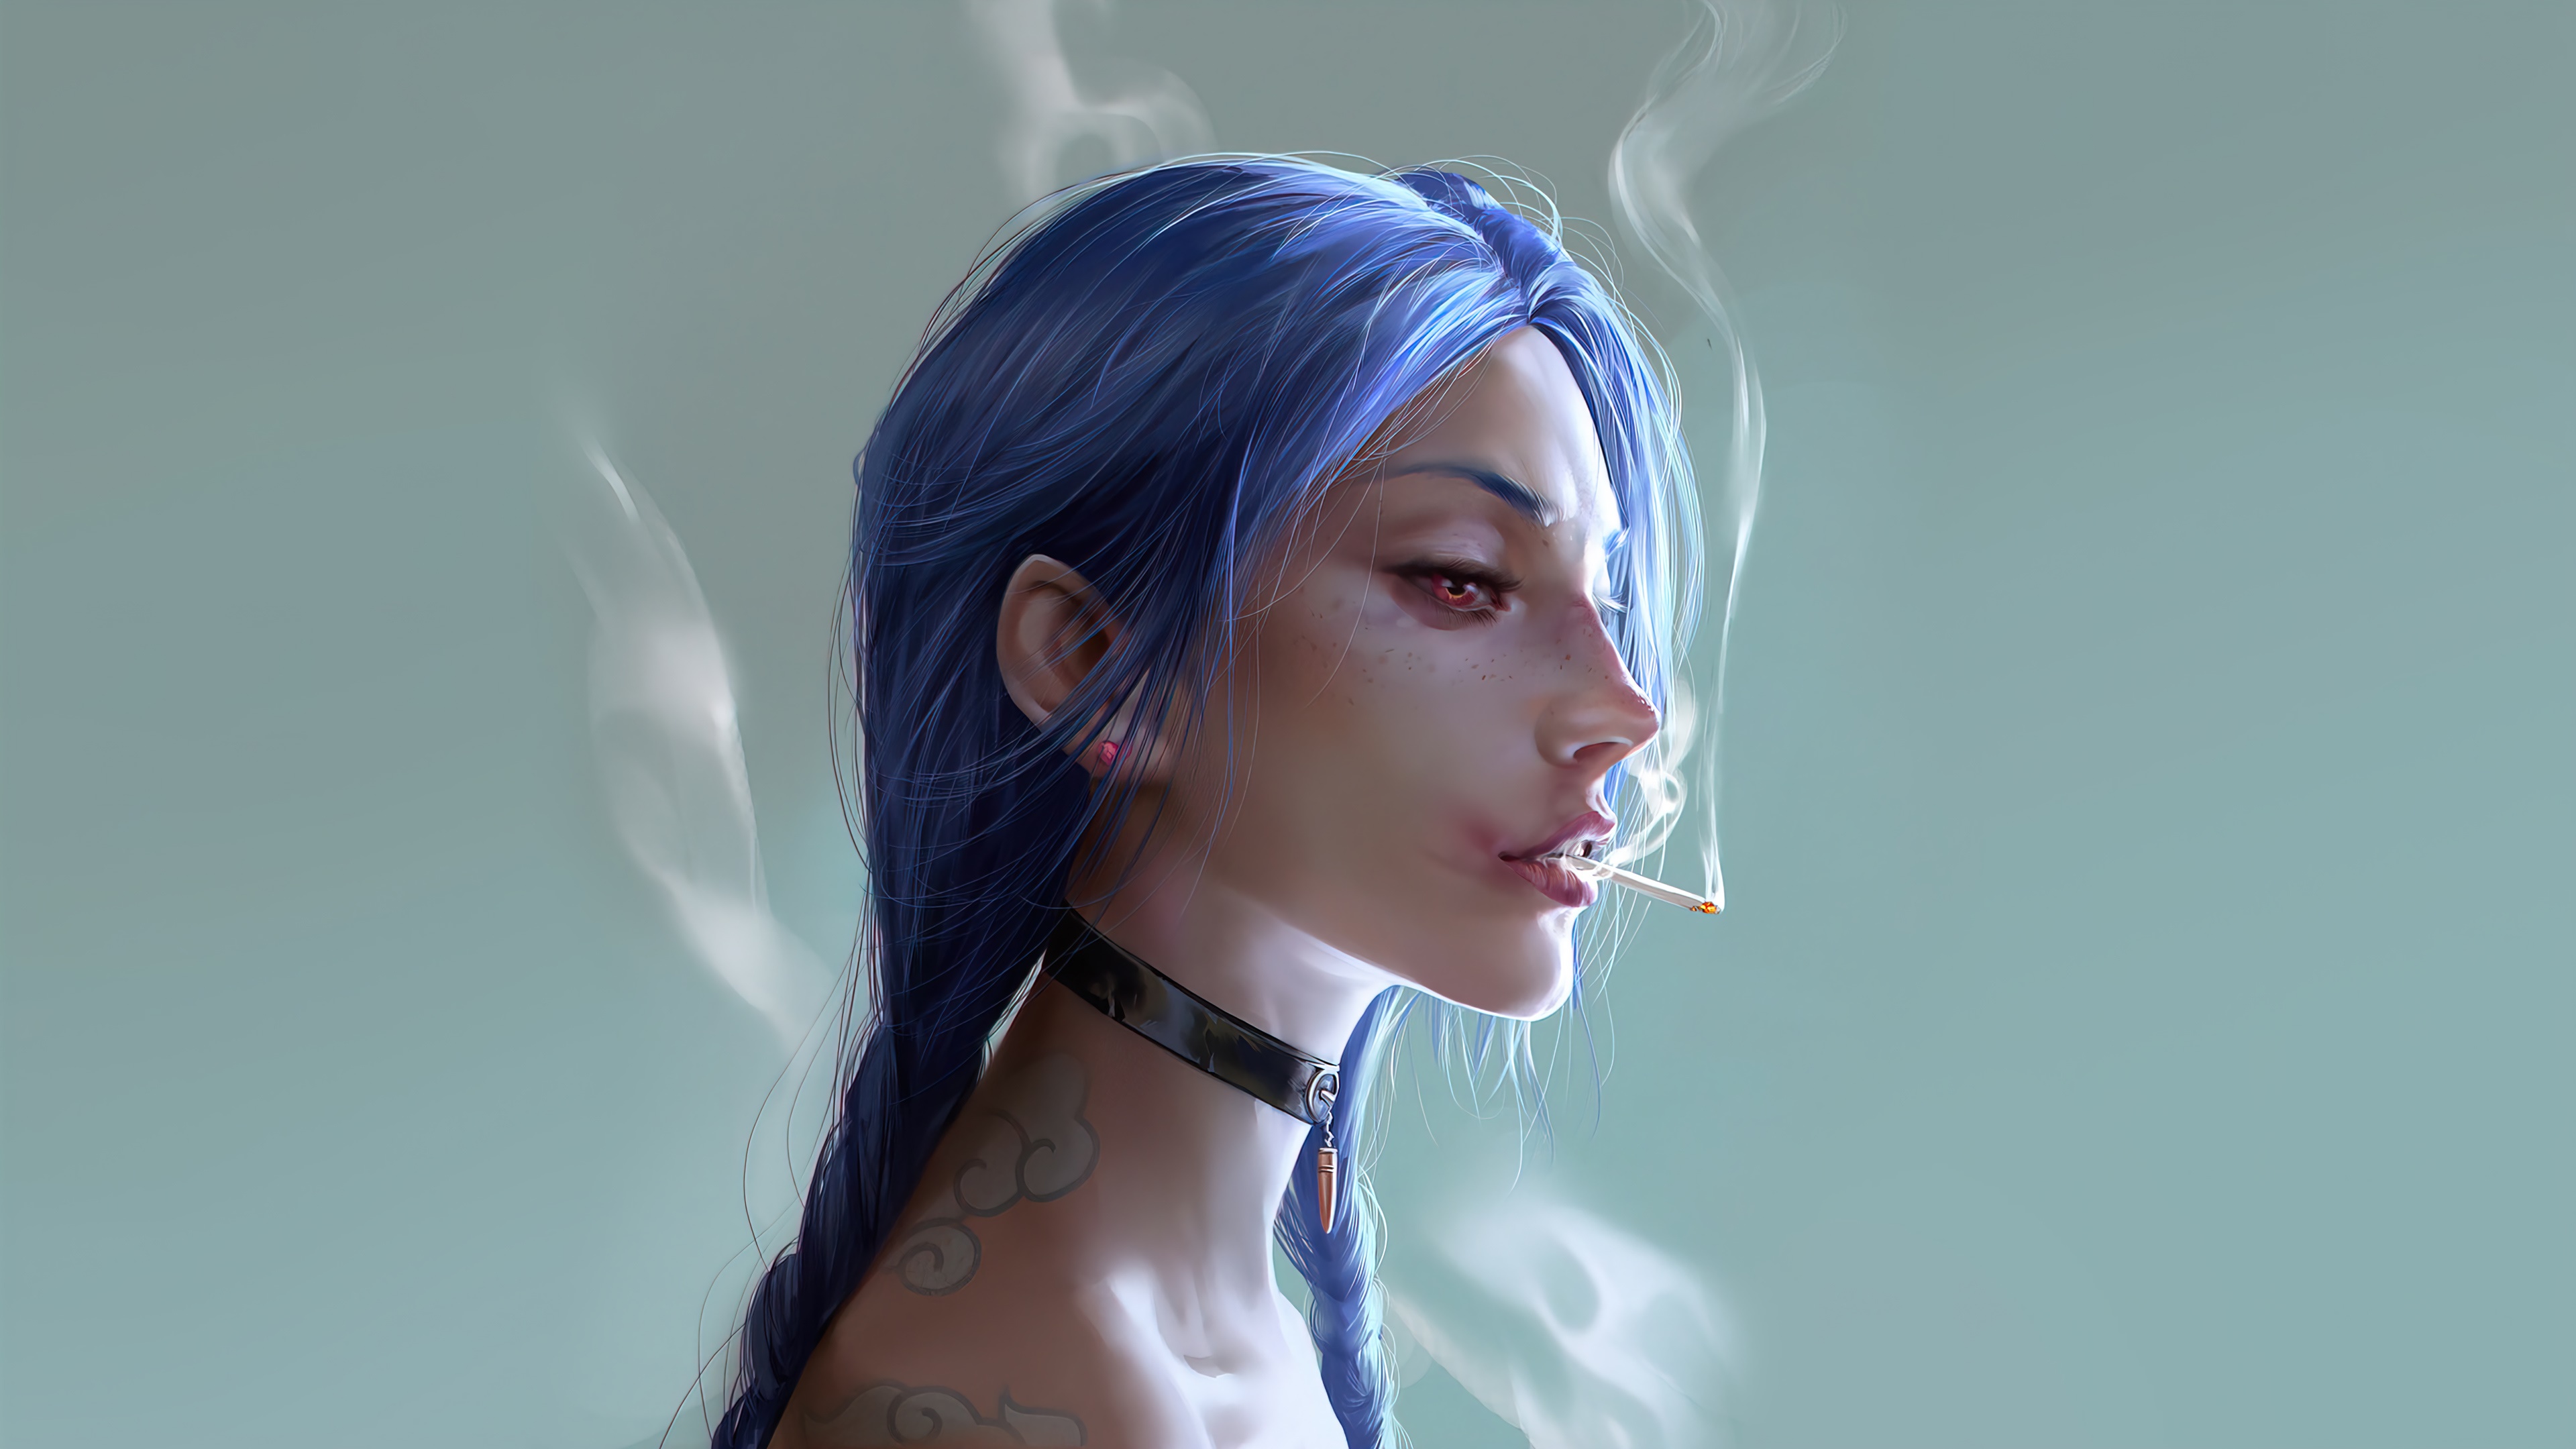 Artwork Women Jinx League Of Legends Blue Hair Smoking Choker 3840x2160